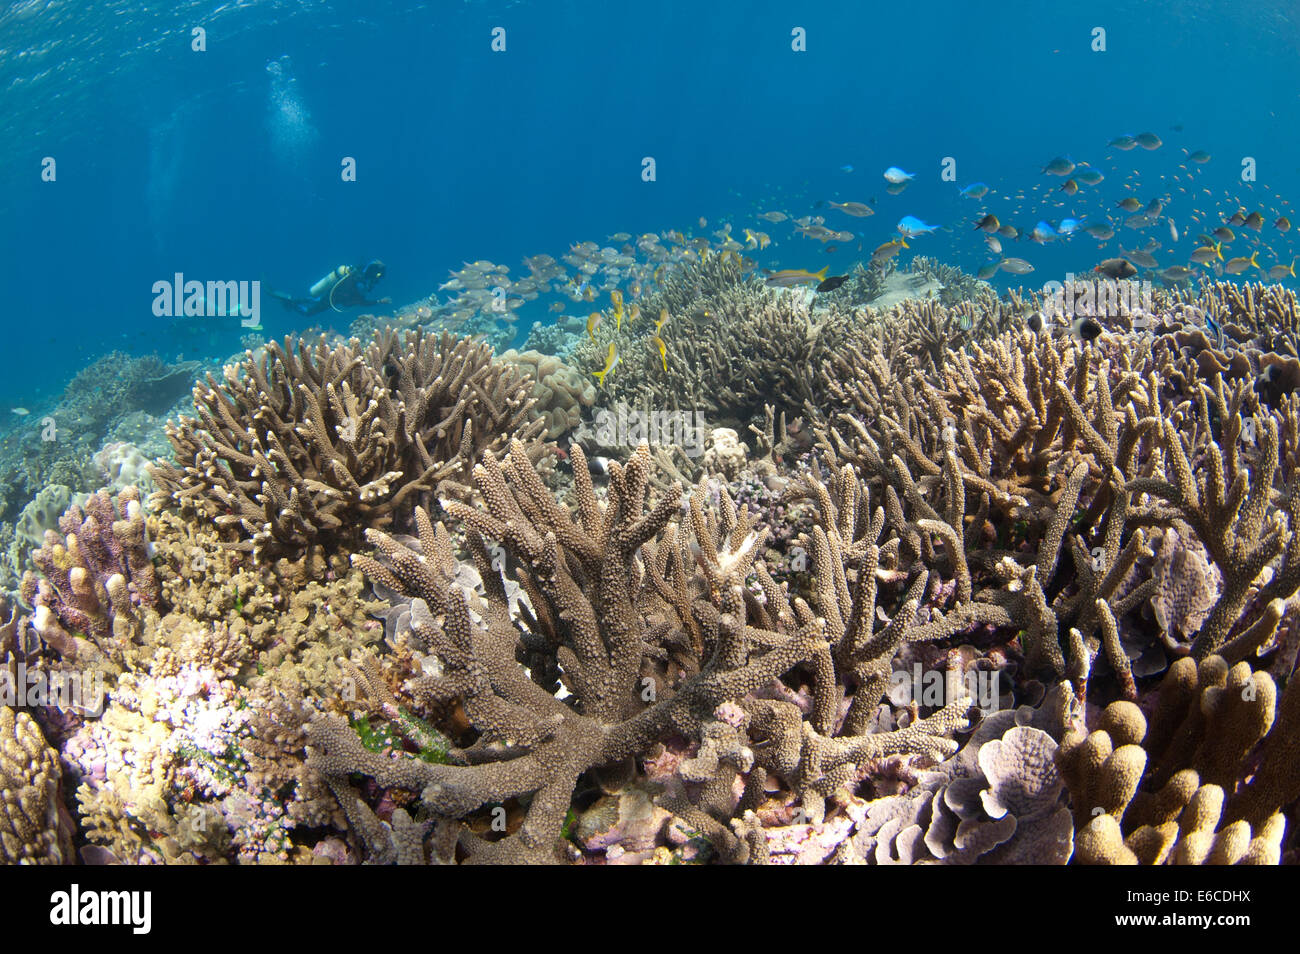 Plongeur et grande école de poissons multicolores dans un récif peu profond dans l'Atoll, Maldives Banque D'Images